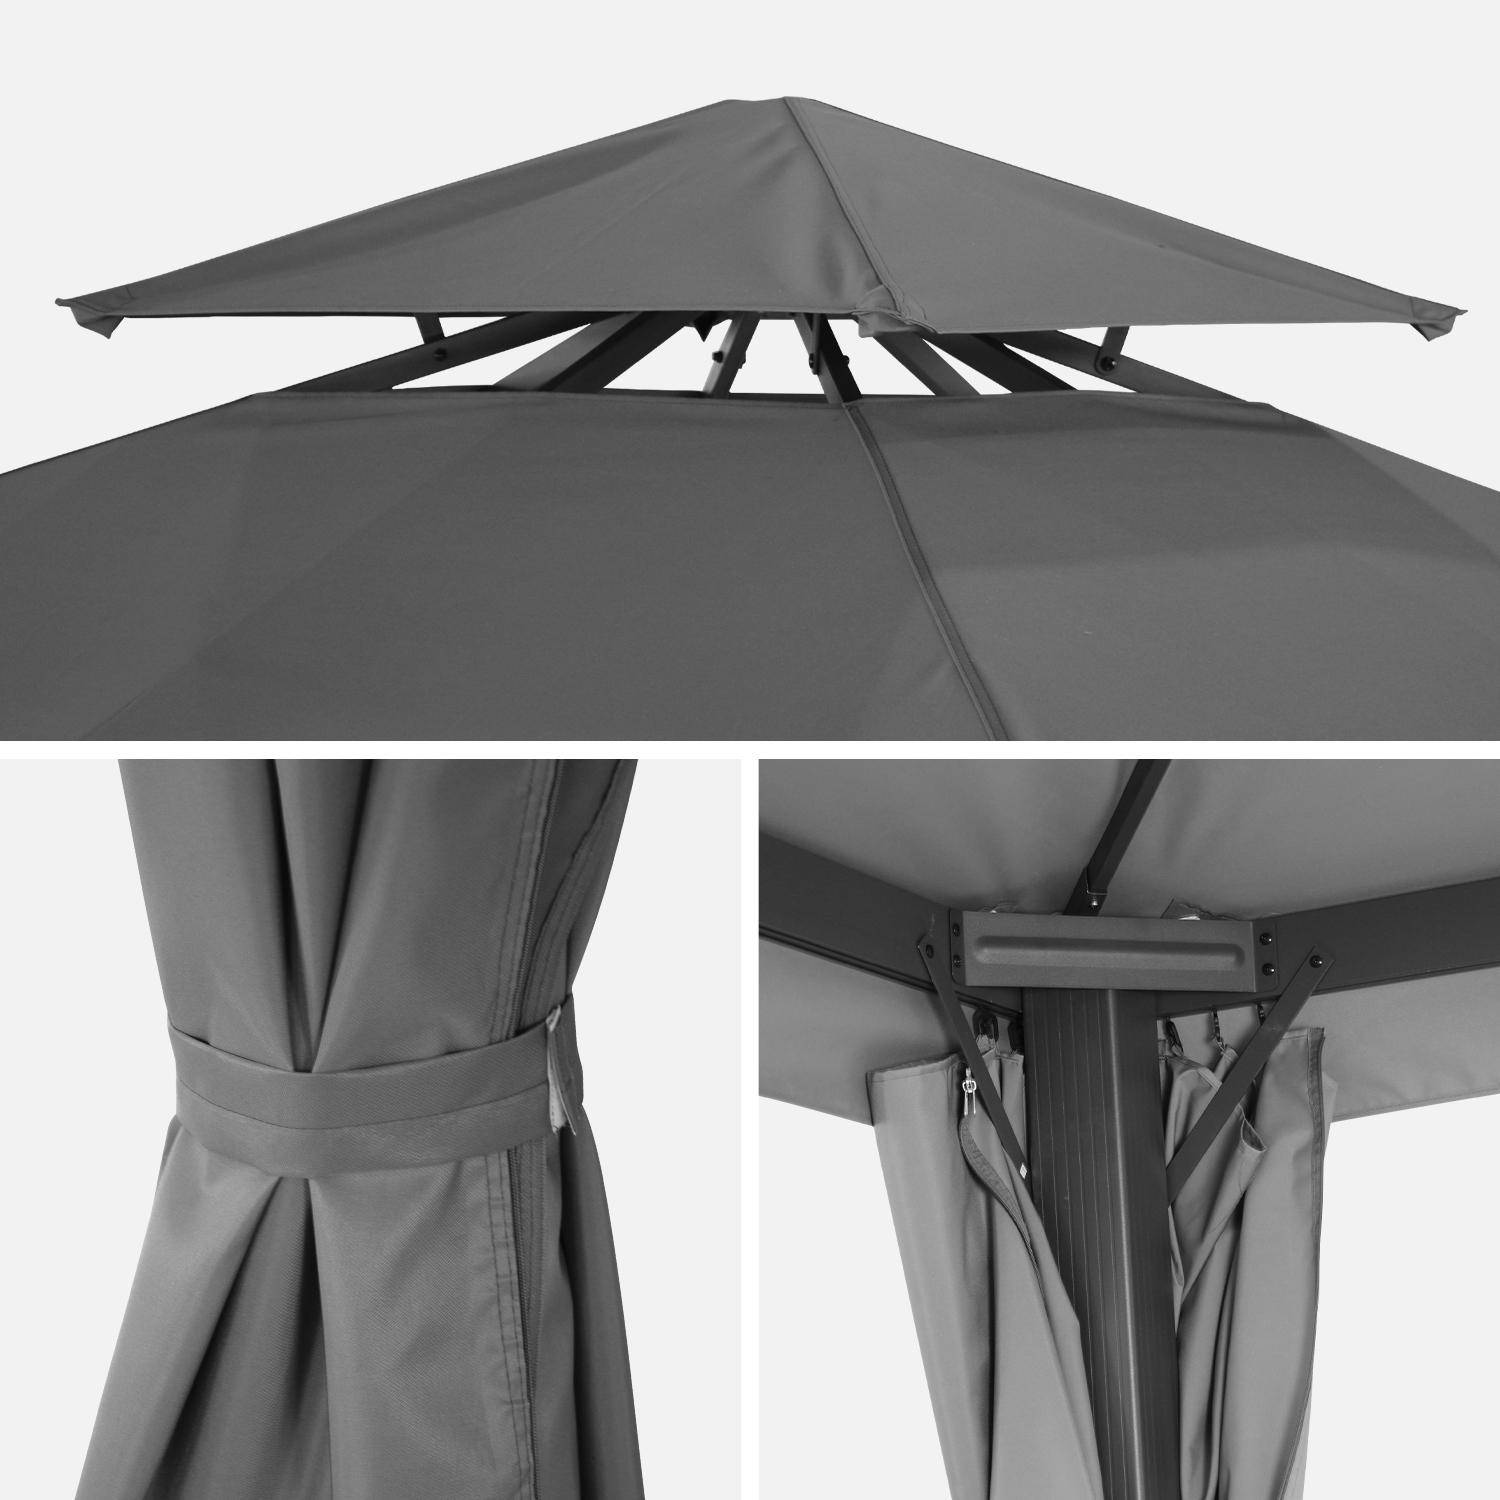 Pérgola de aluminio - Divodorum 3x3m - Lona gris - Cenador con cortinas, estructura de aluminio Photo4